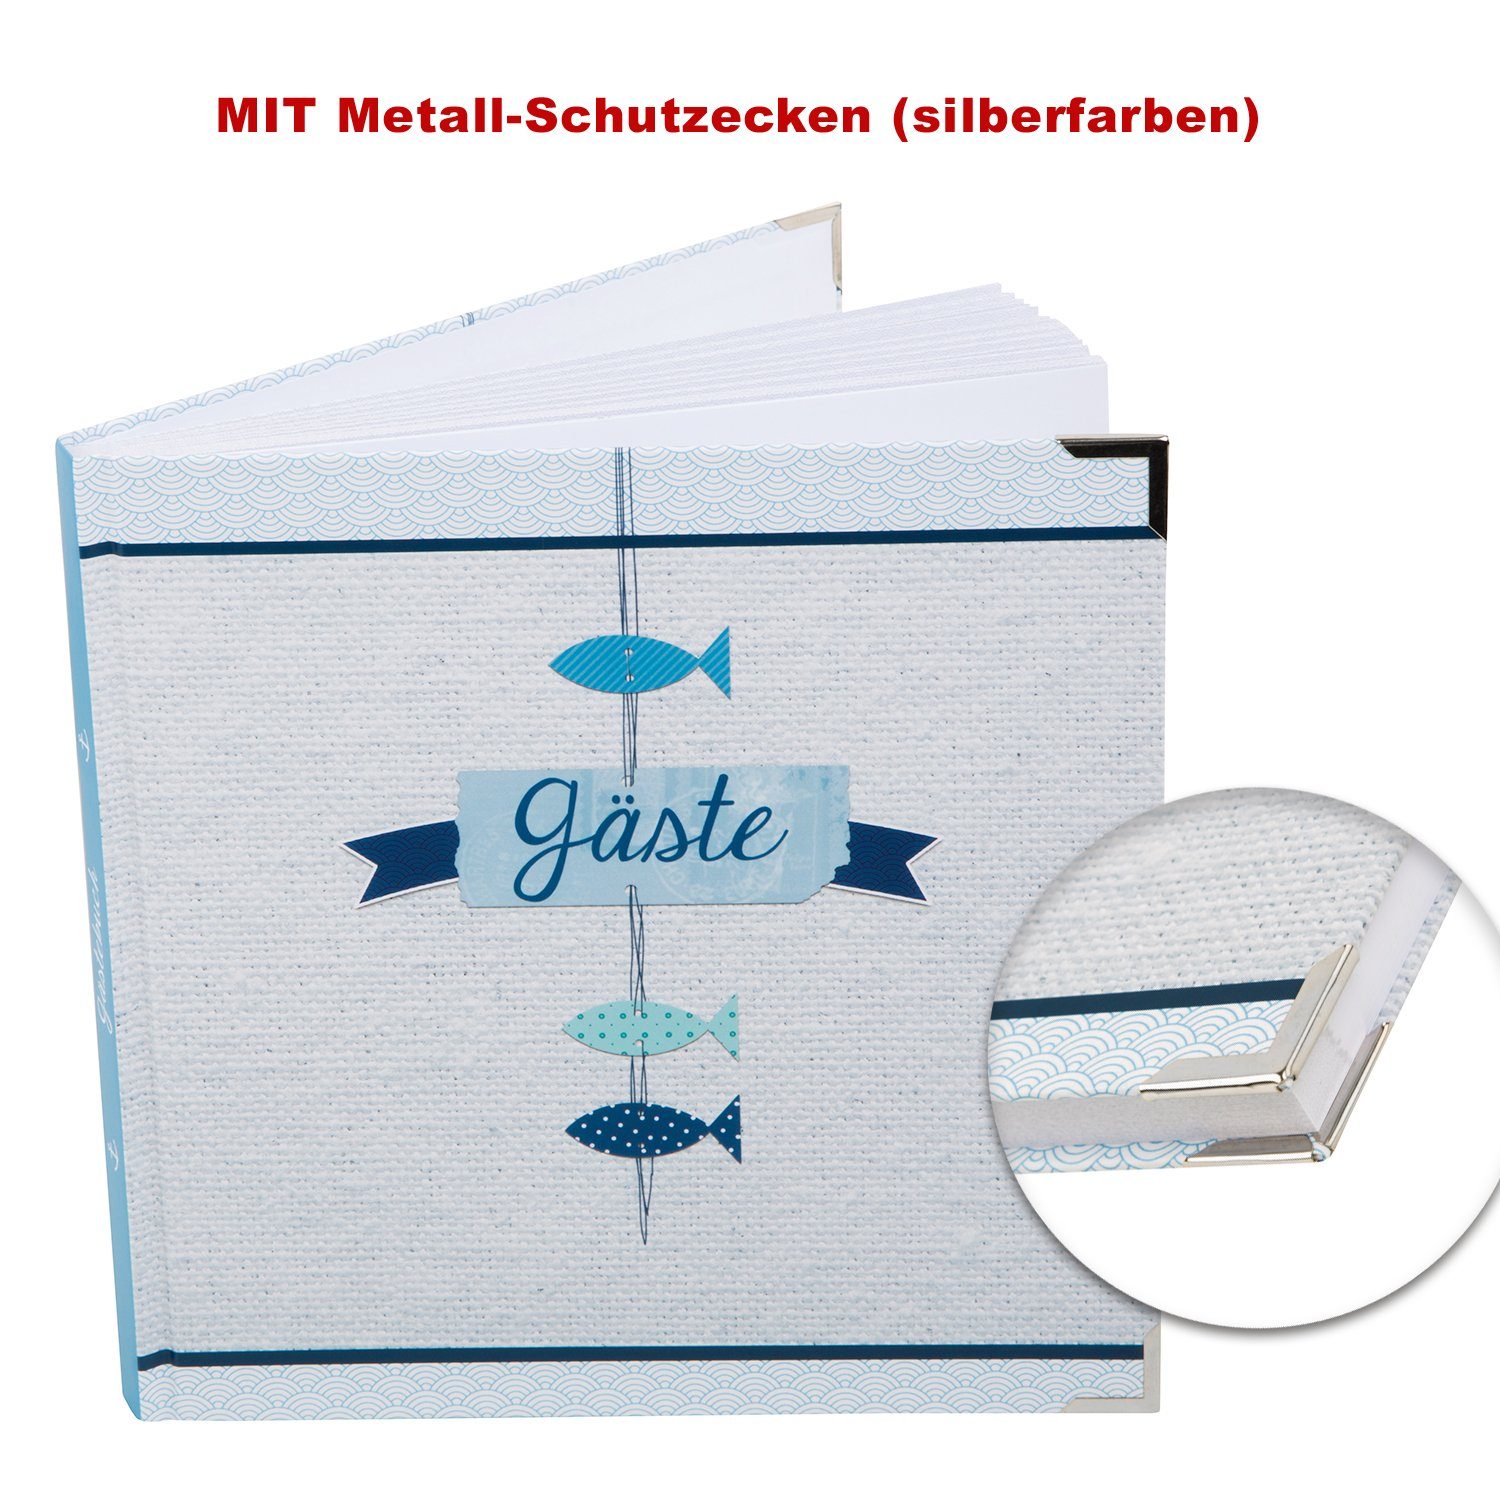 Logbuch-Verlag Tagebuch Quadratisches Metallecken maritim mit Gästebuch